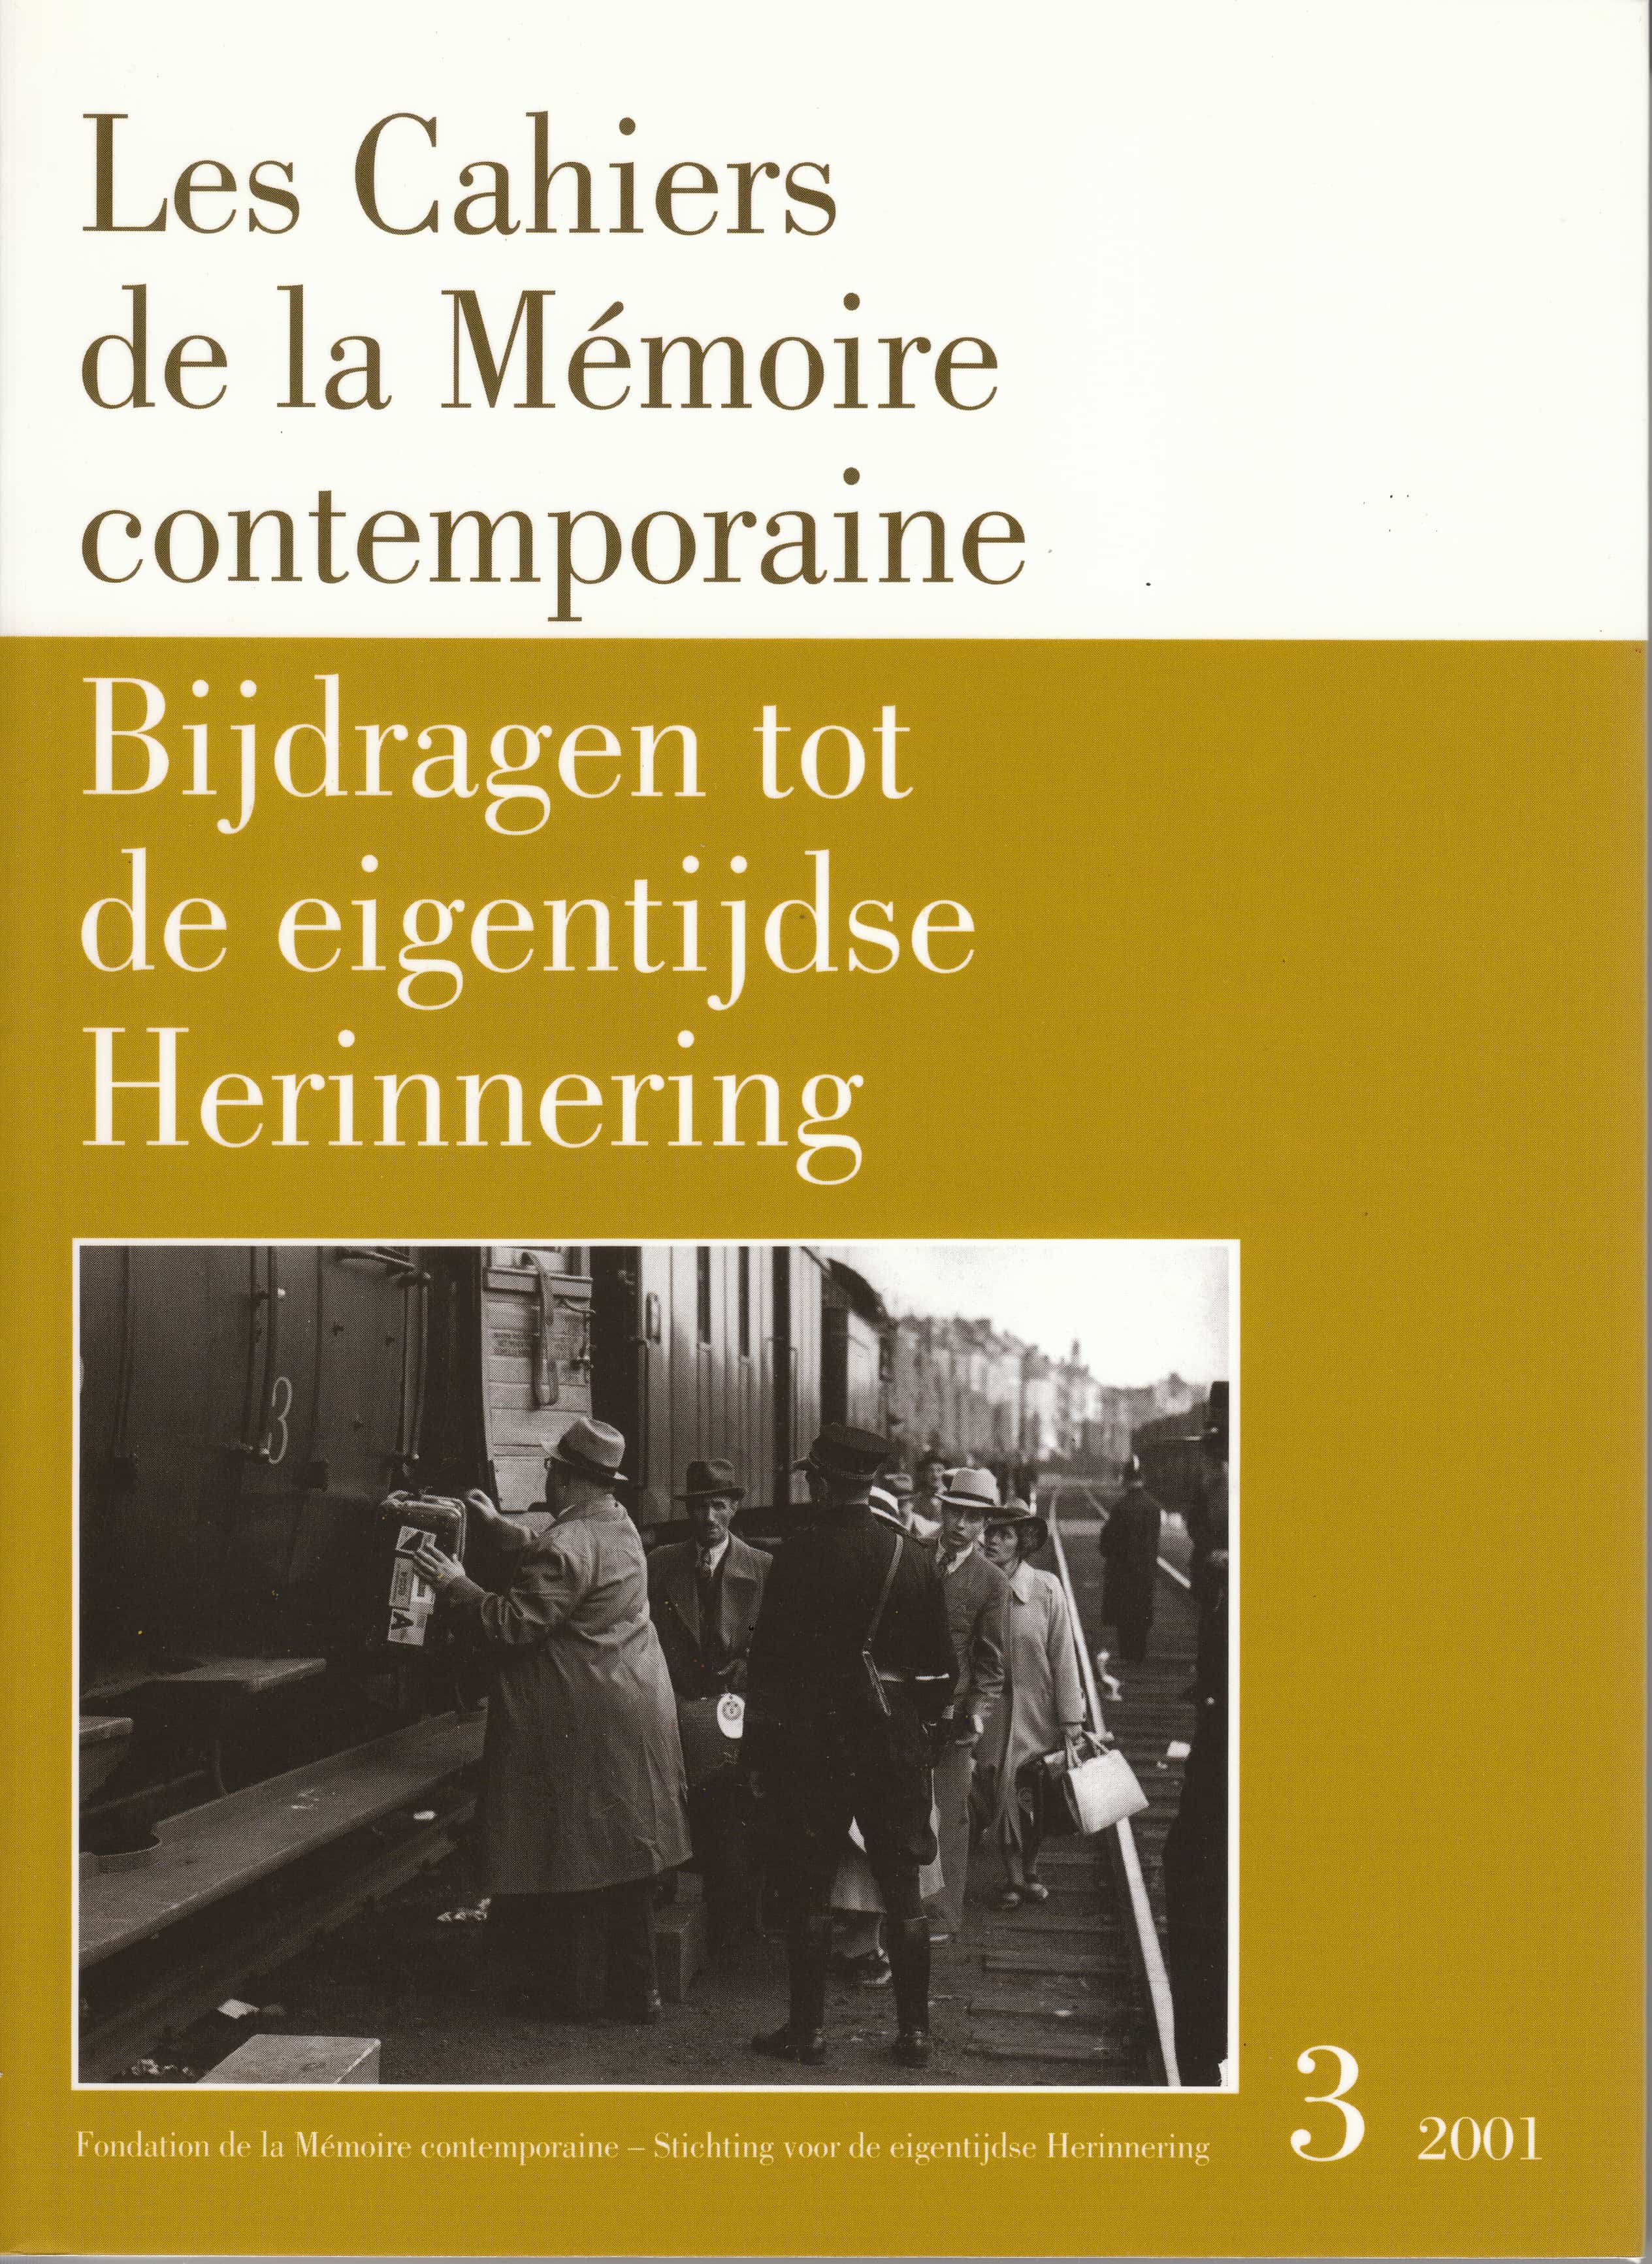 Les Cahiers de la Mémoire Contemporaine 3-2001